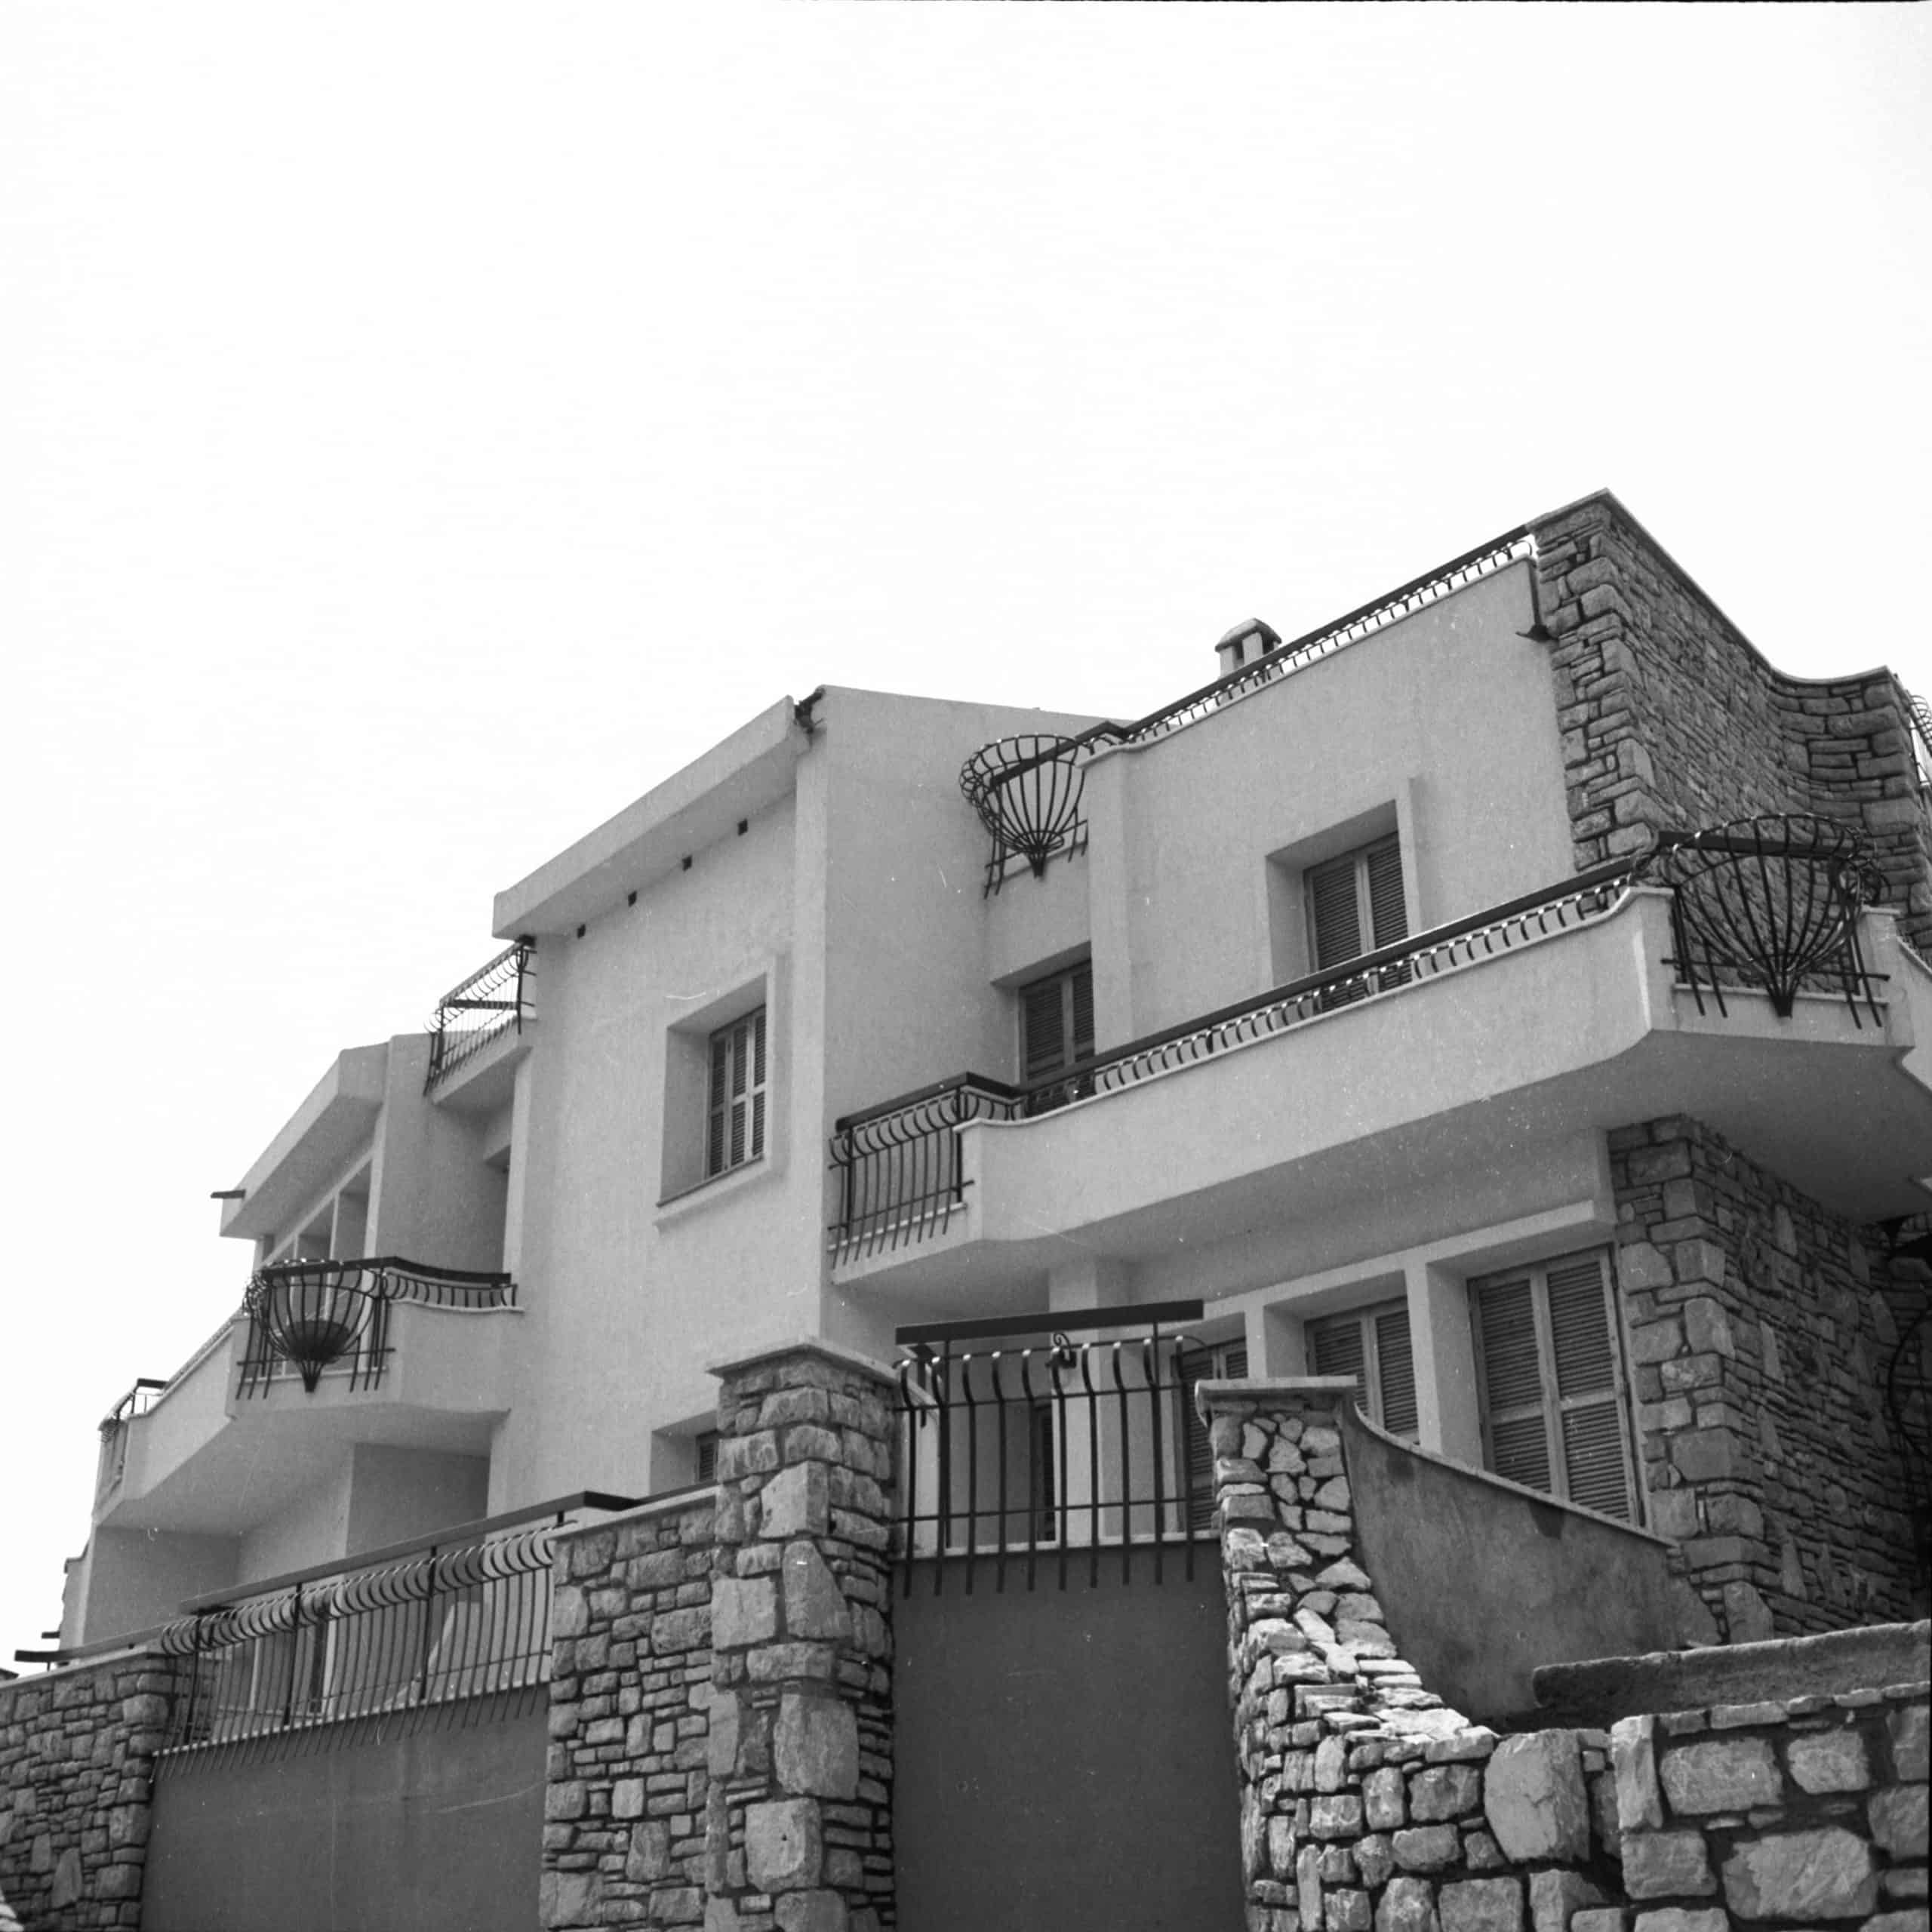 8 - Villa trifamiliare Di Raimo in via Campo delle Monache, Sperlonga (LT) - Vista esterna